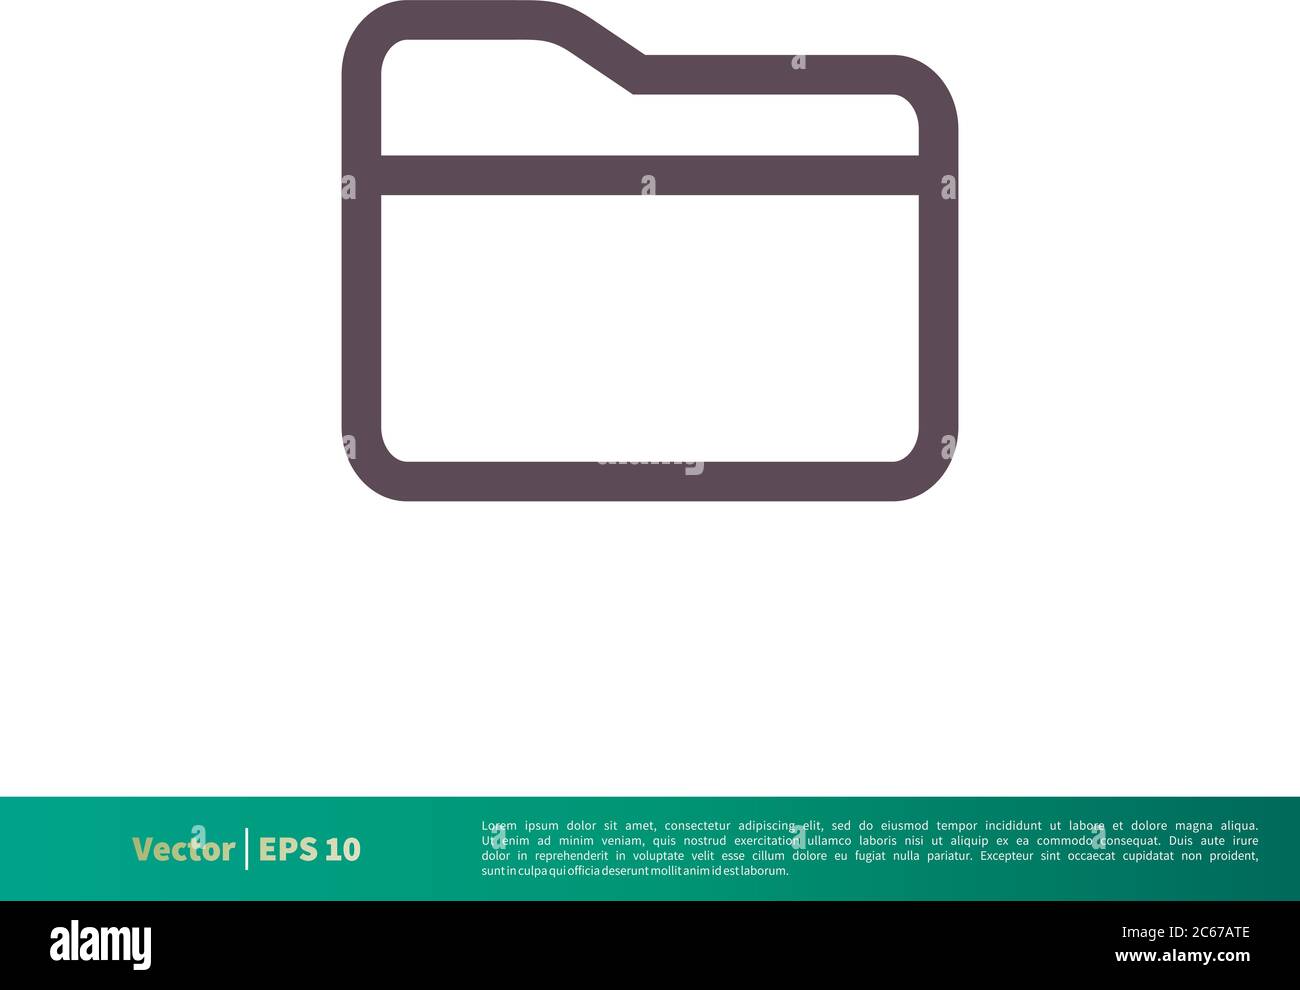 Folder Icon Vector Logo Template Illustration Design. Editable Vector EPS 10. Stock Vector